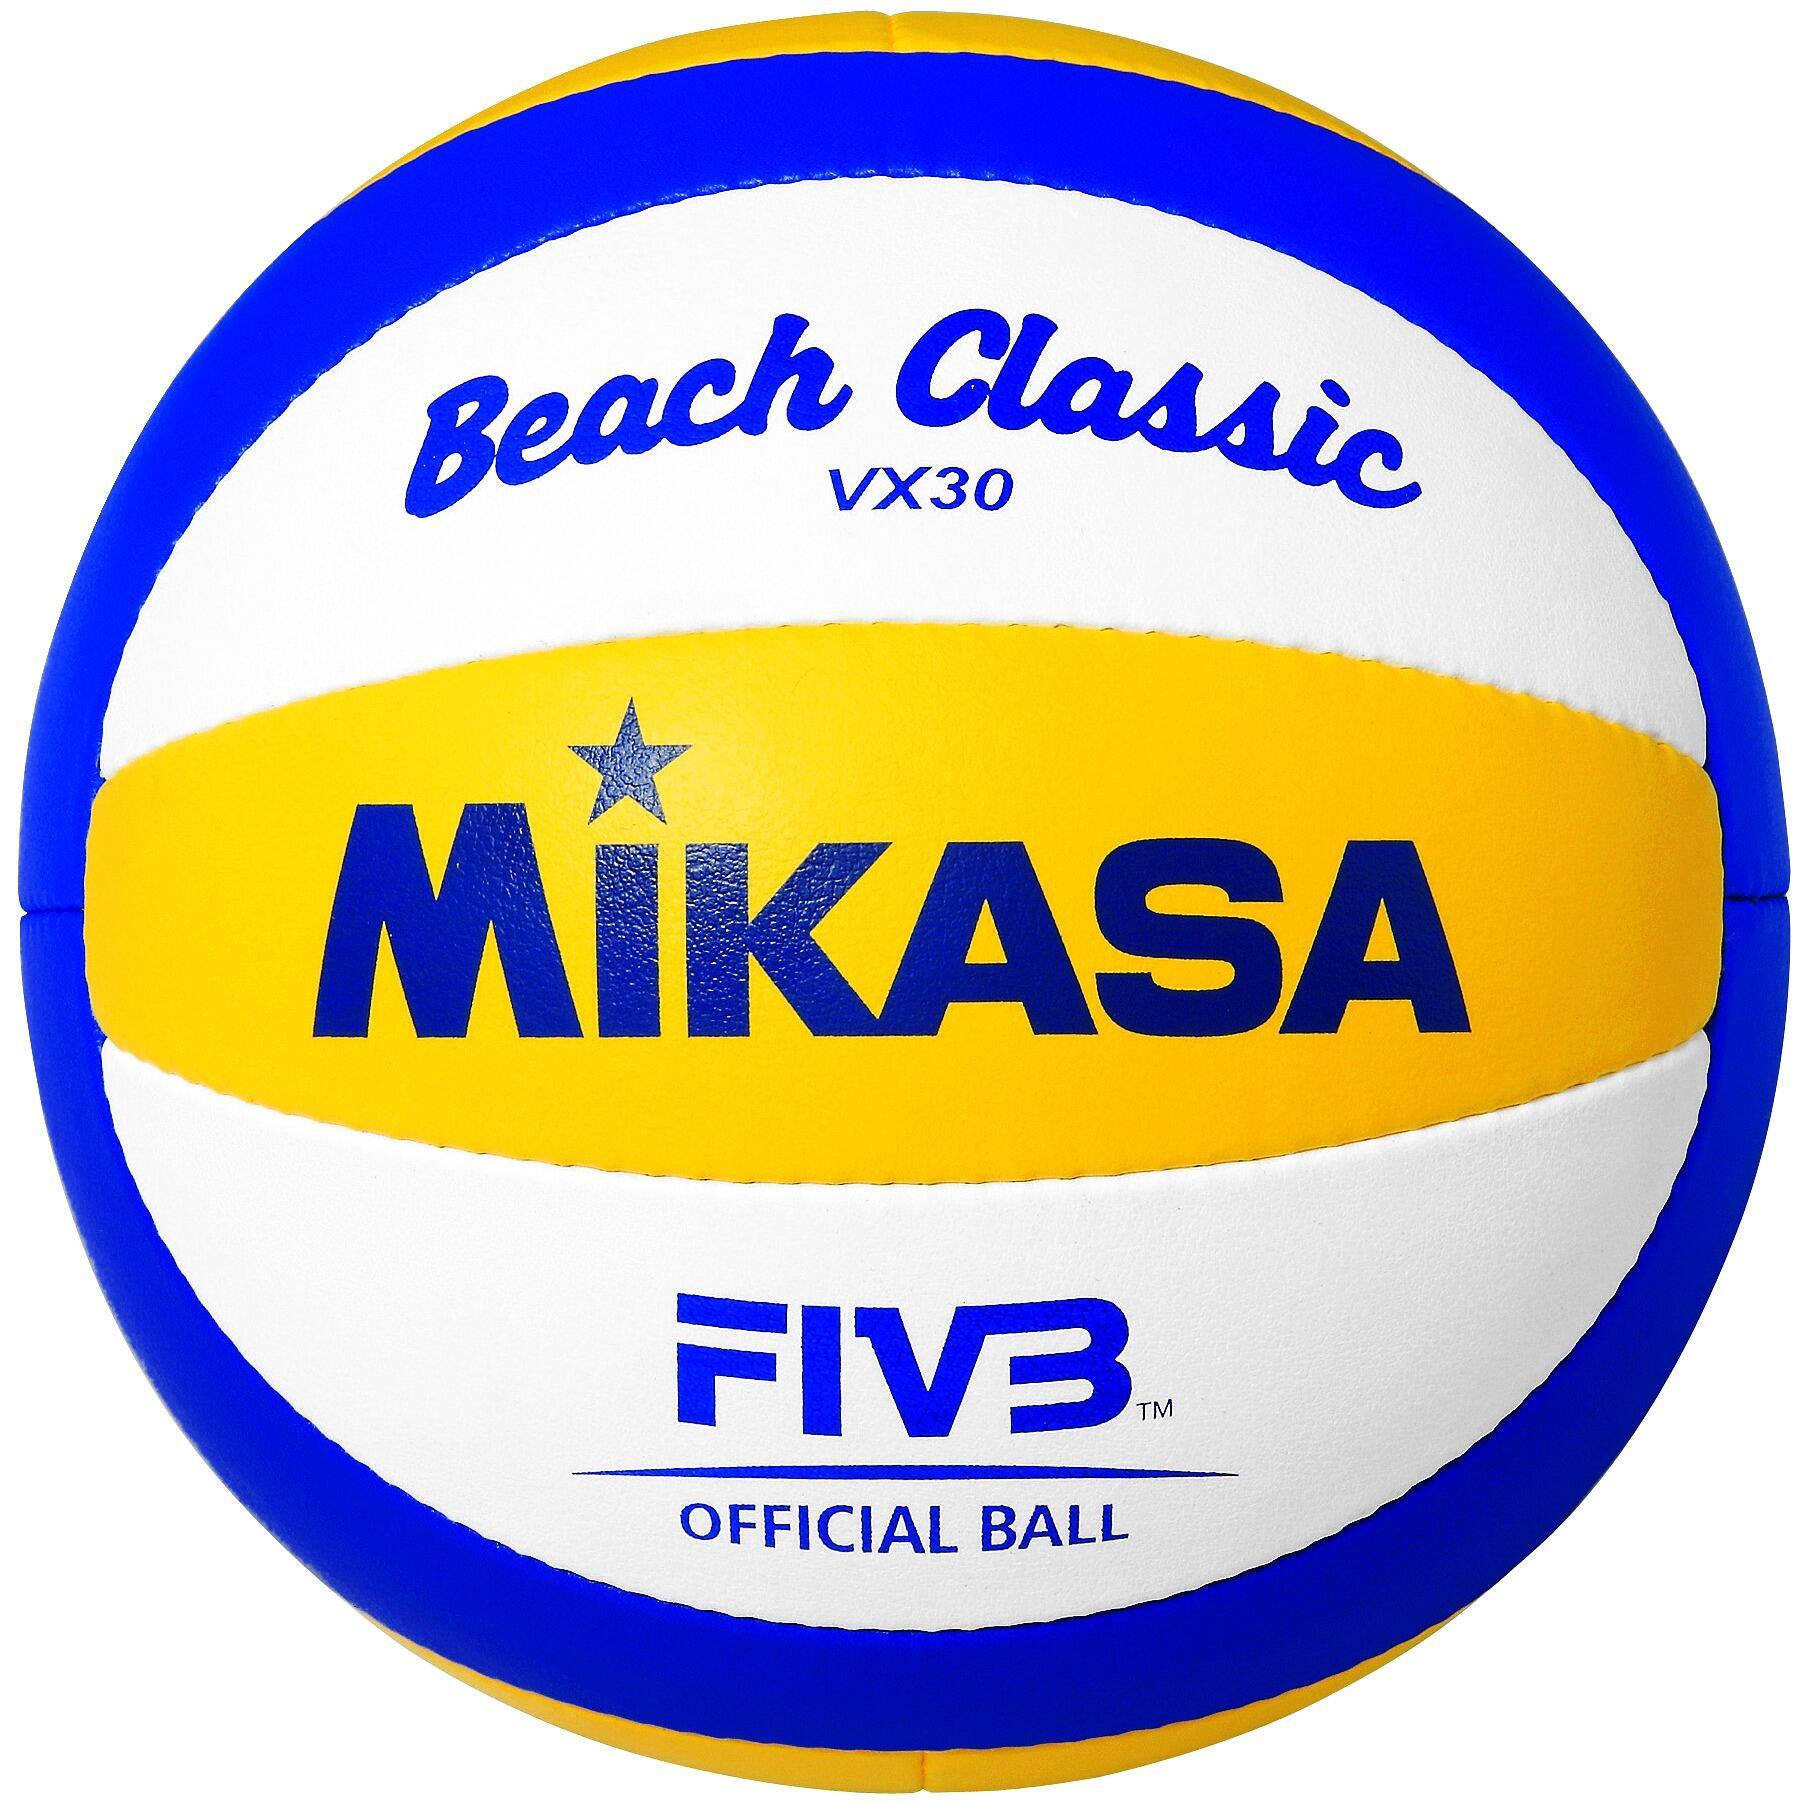 Mikasa Beach Volleyball Beach Classic VX30, красочный original mikasa volleyball mva380k5 pu super hard fiber brand competition training ball fivb official volleyball